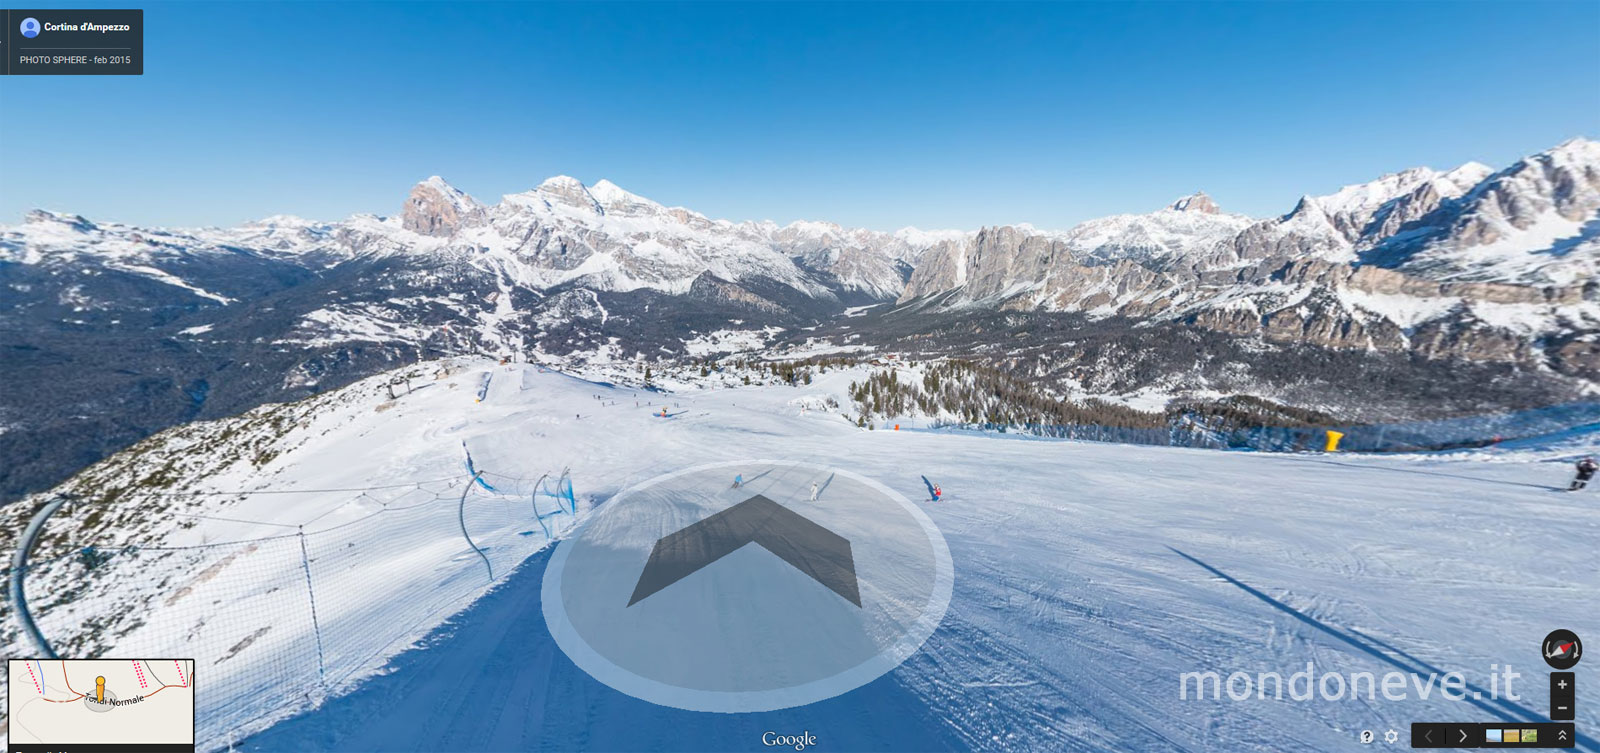 Cortina sbarca su Google Ski Maps, ora si puo’ sciare anche virtualmente